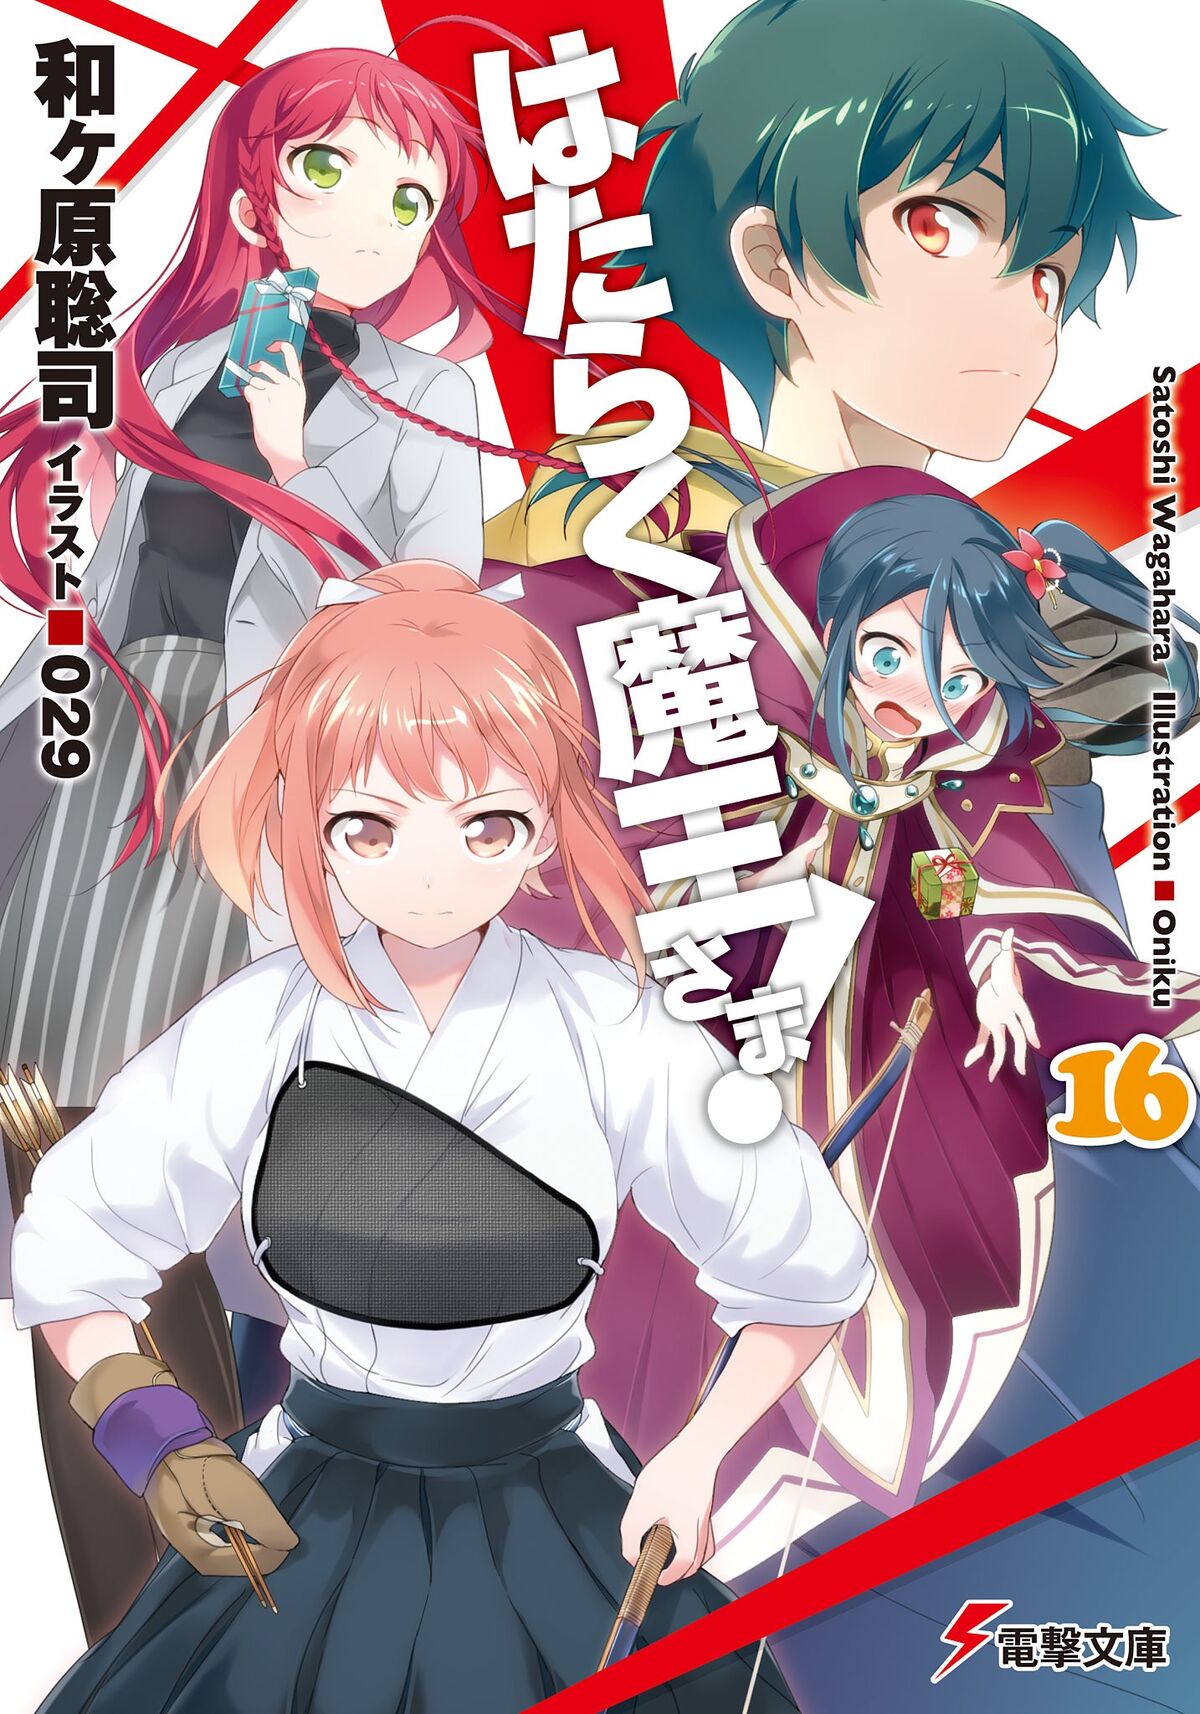 Hataraku Maou-sama! 0  Light Novel 